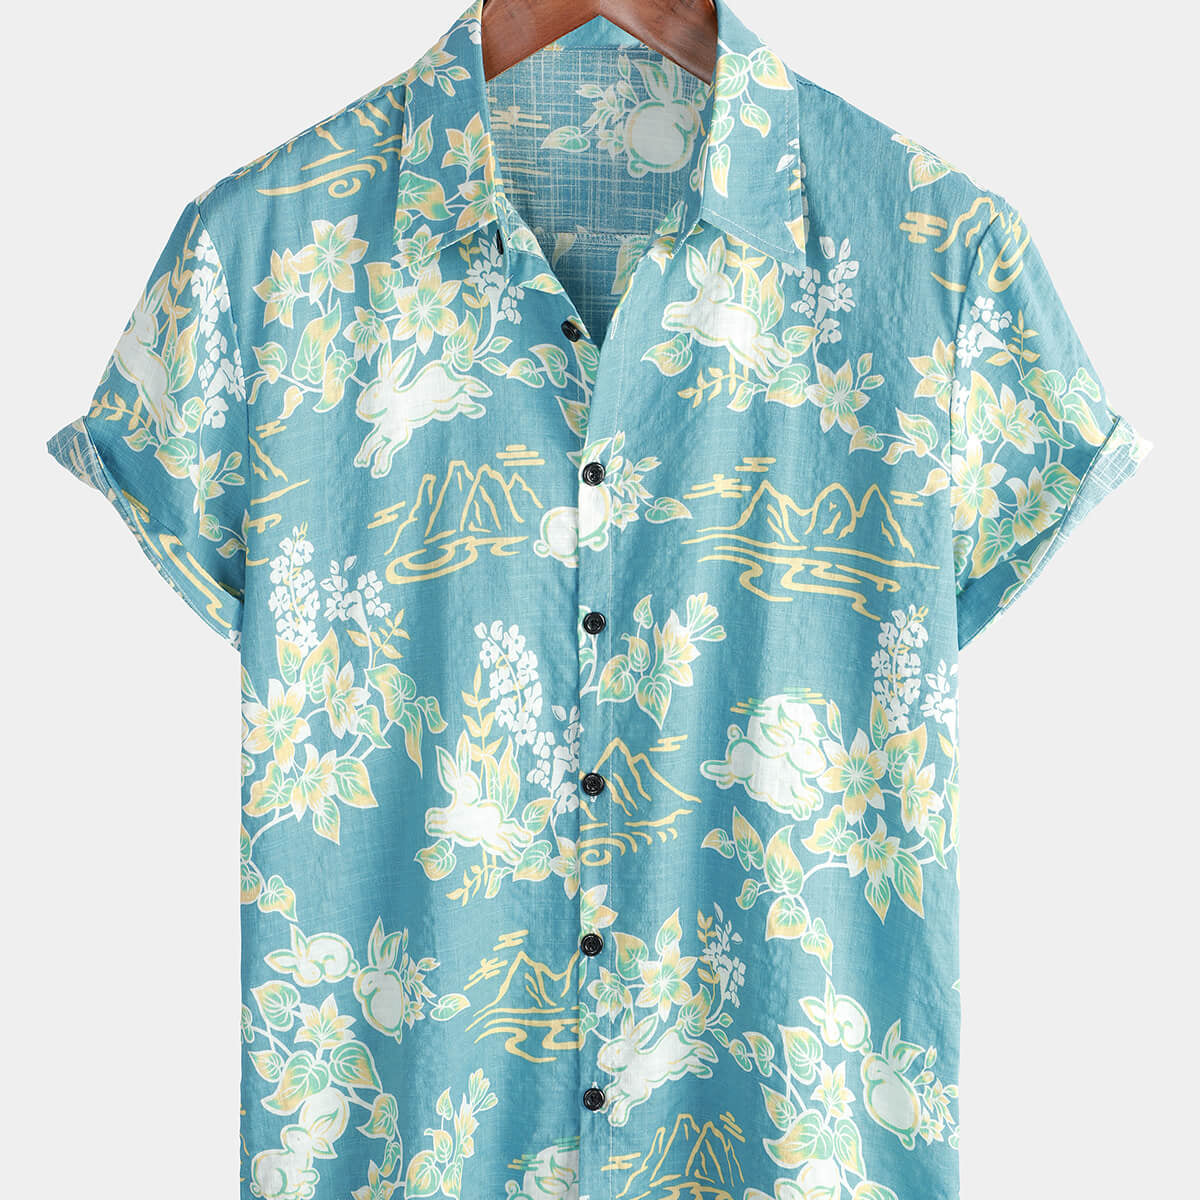 Men's Hawaiian Tropical Floral Print Beach Summer Short Sleeve Button Shirt